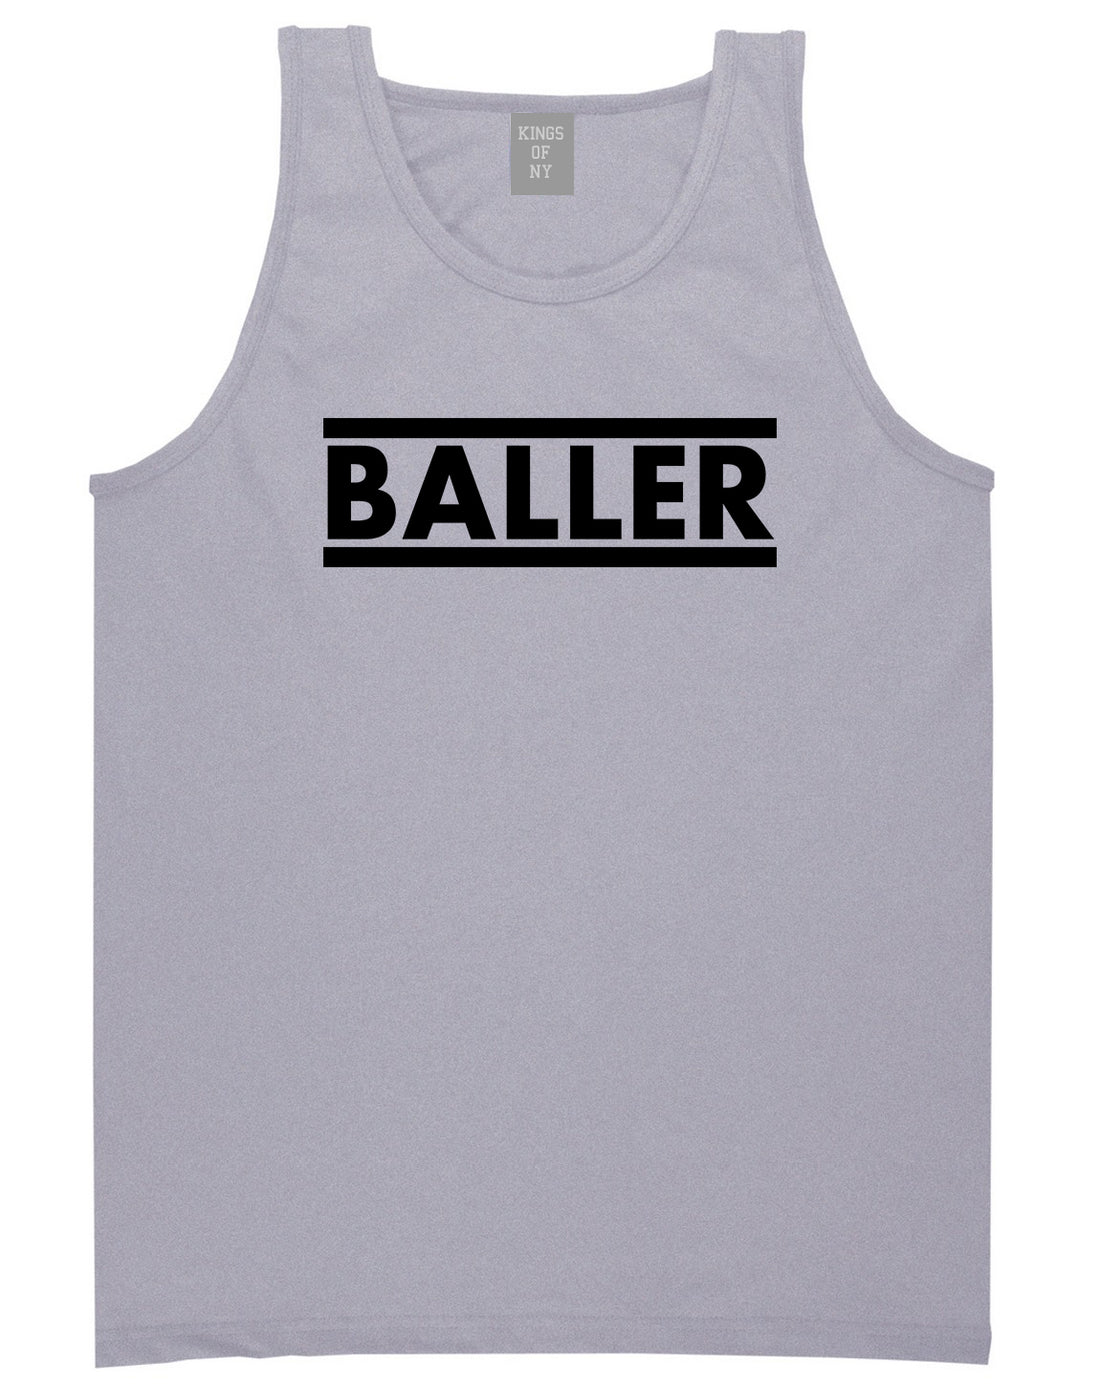 Baller Grey Tank Top Shirt by Kings Of NY